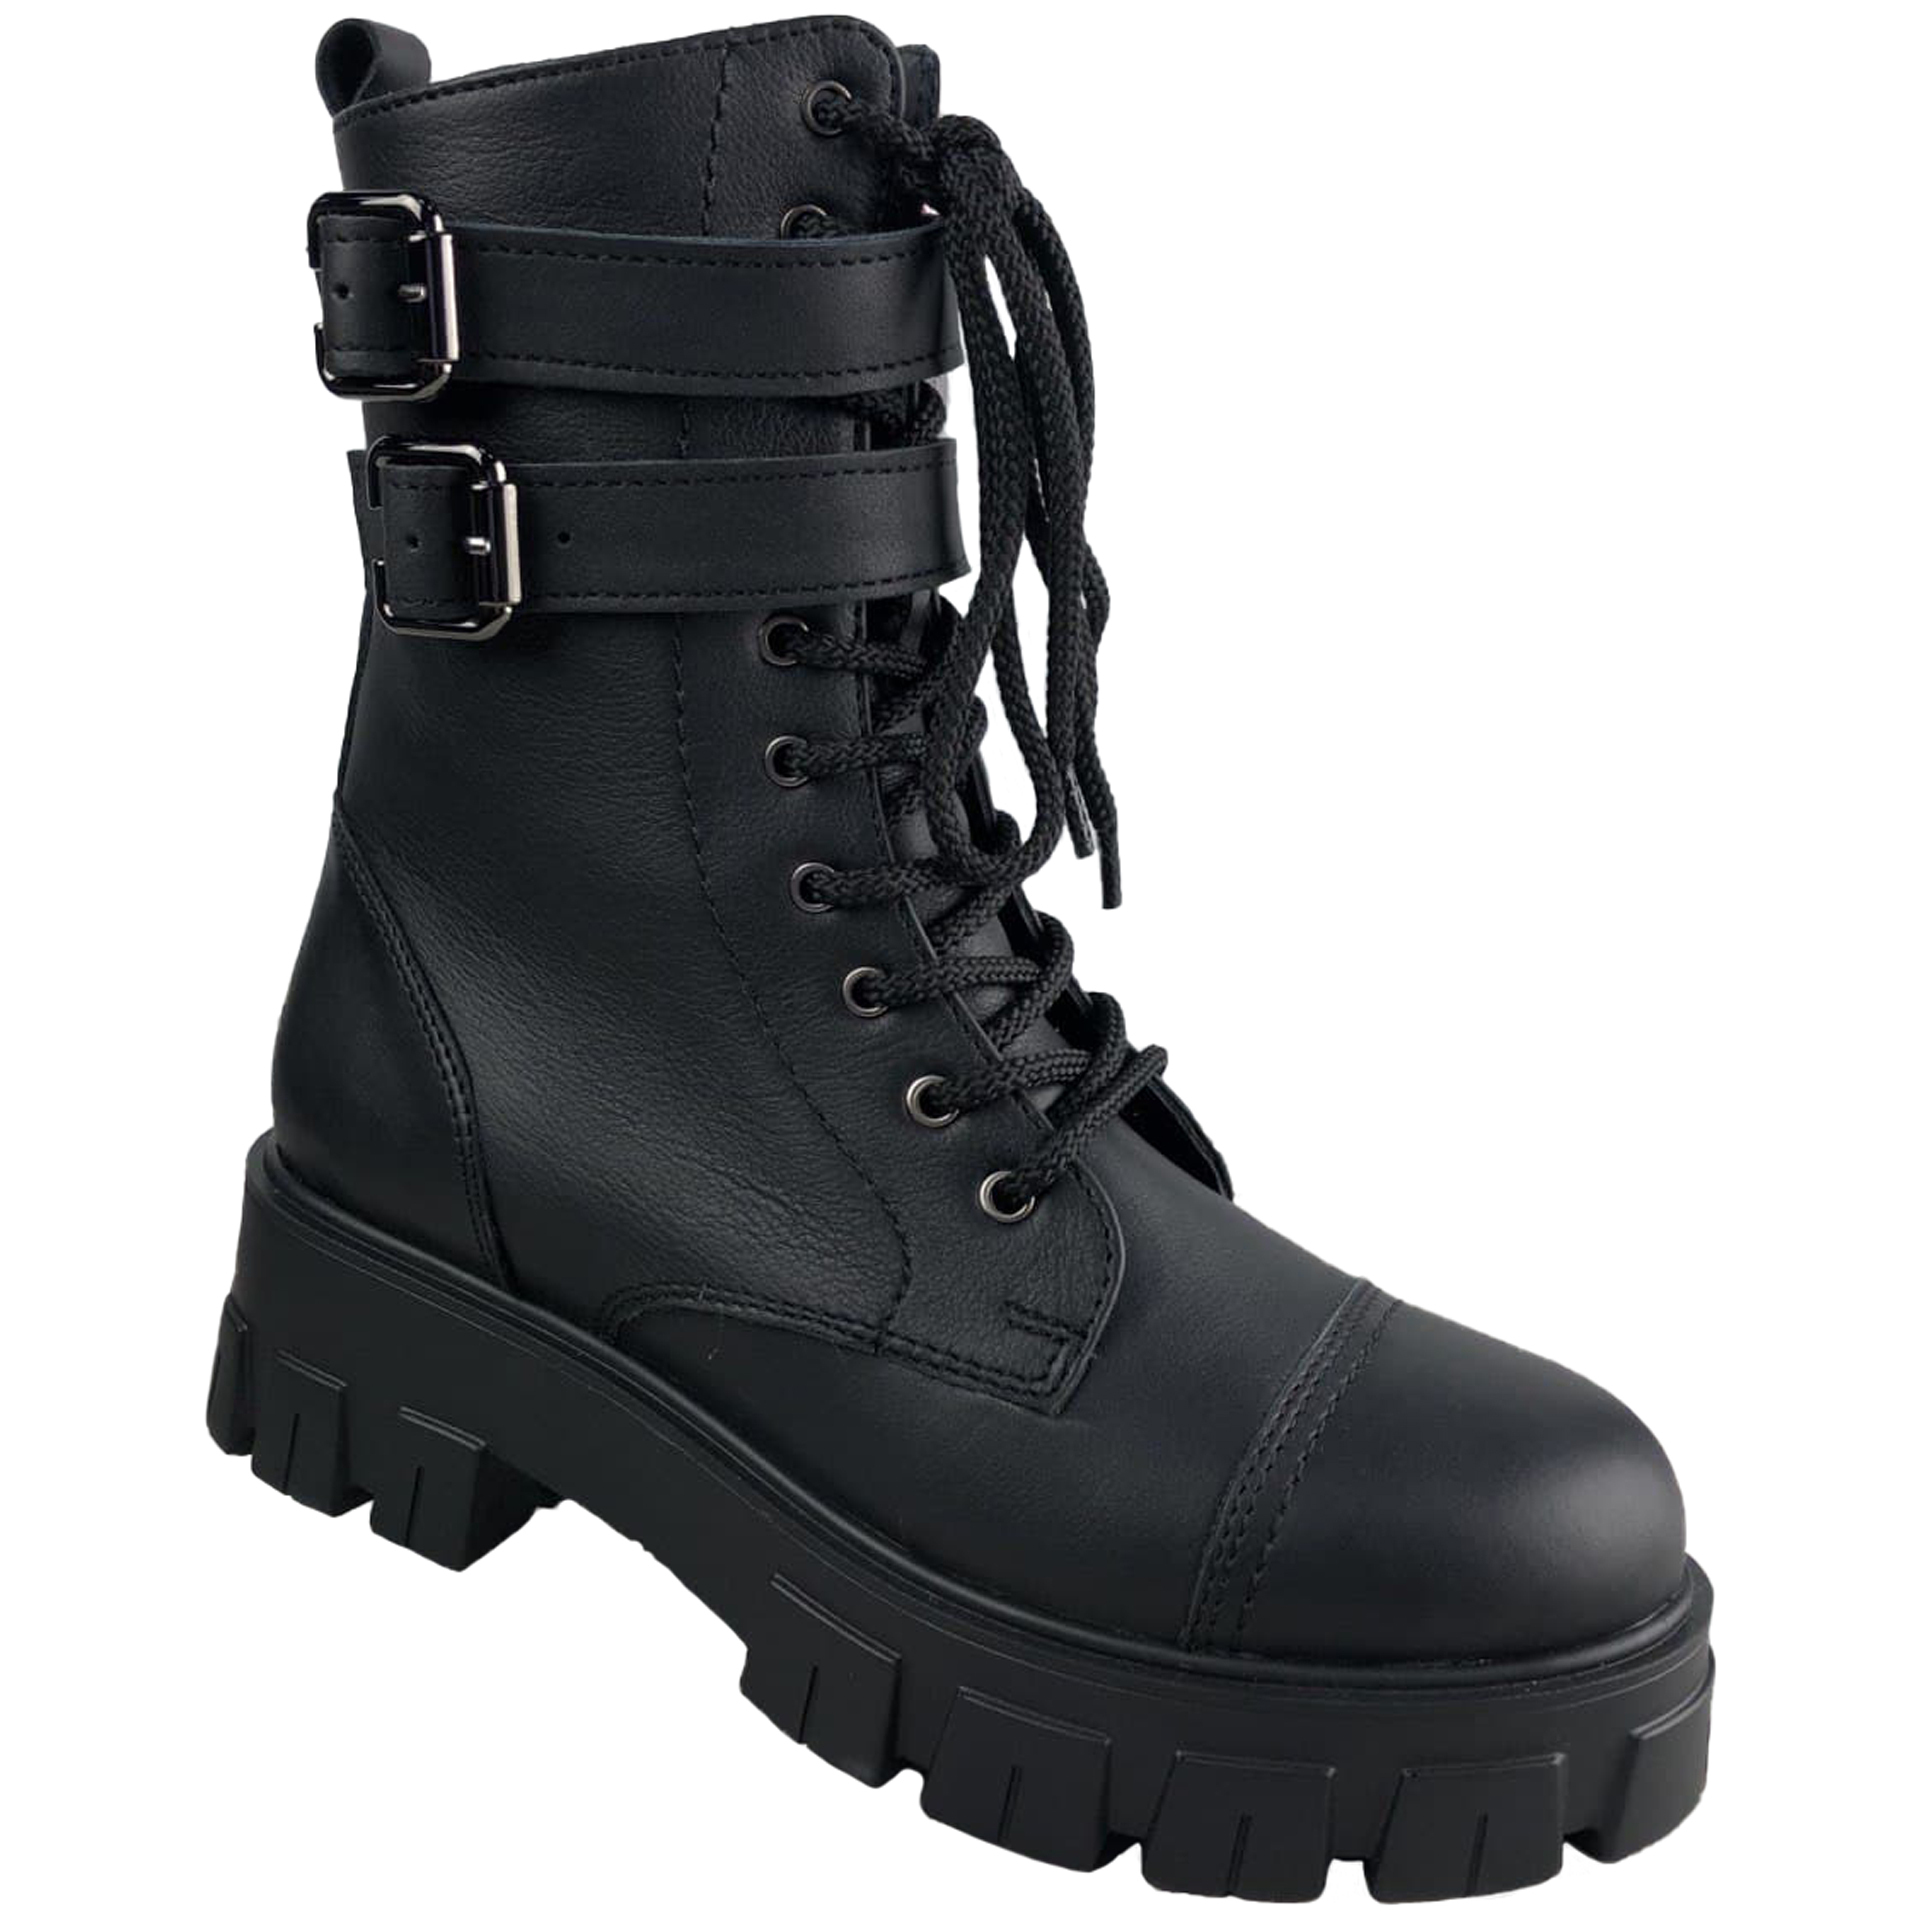 Высокие ботинки подростковые (2235) материал Натуральная кожа, цвет Черный  для девочки 36-40 размеры – Sole Kids